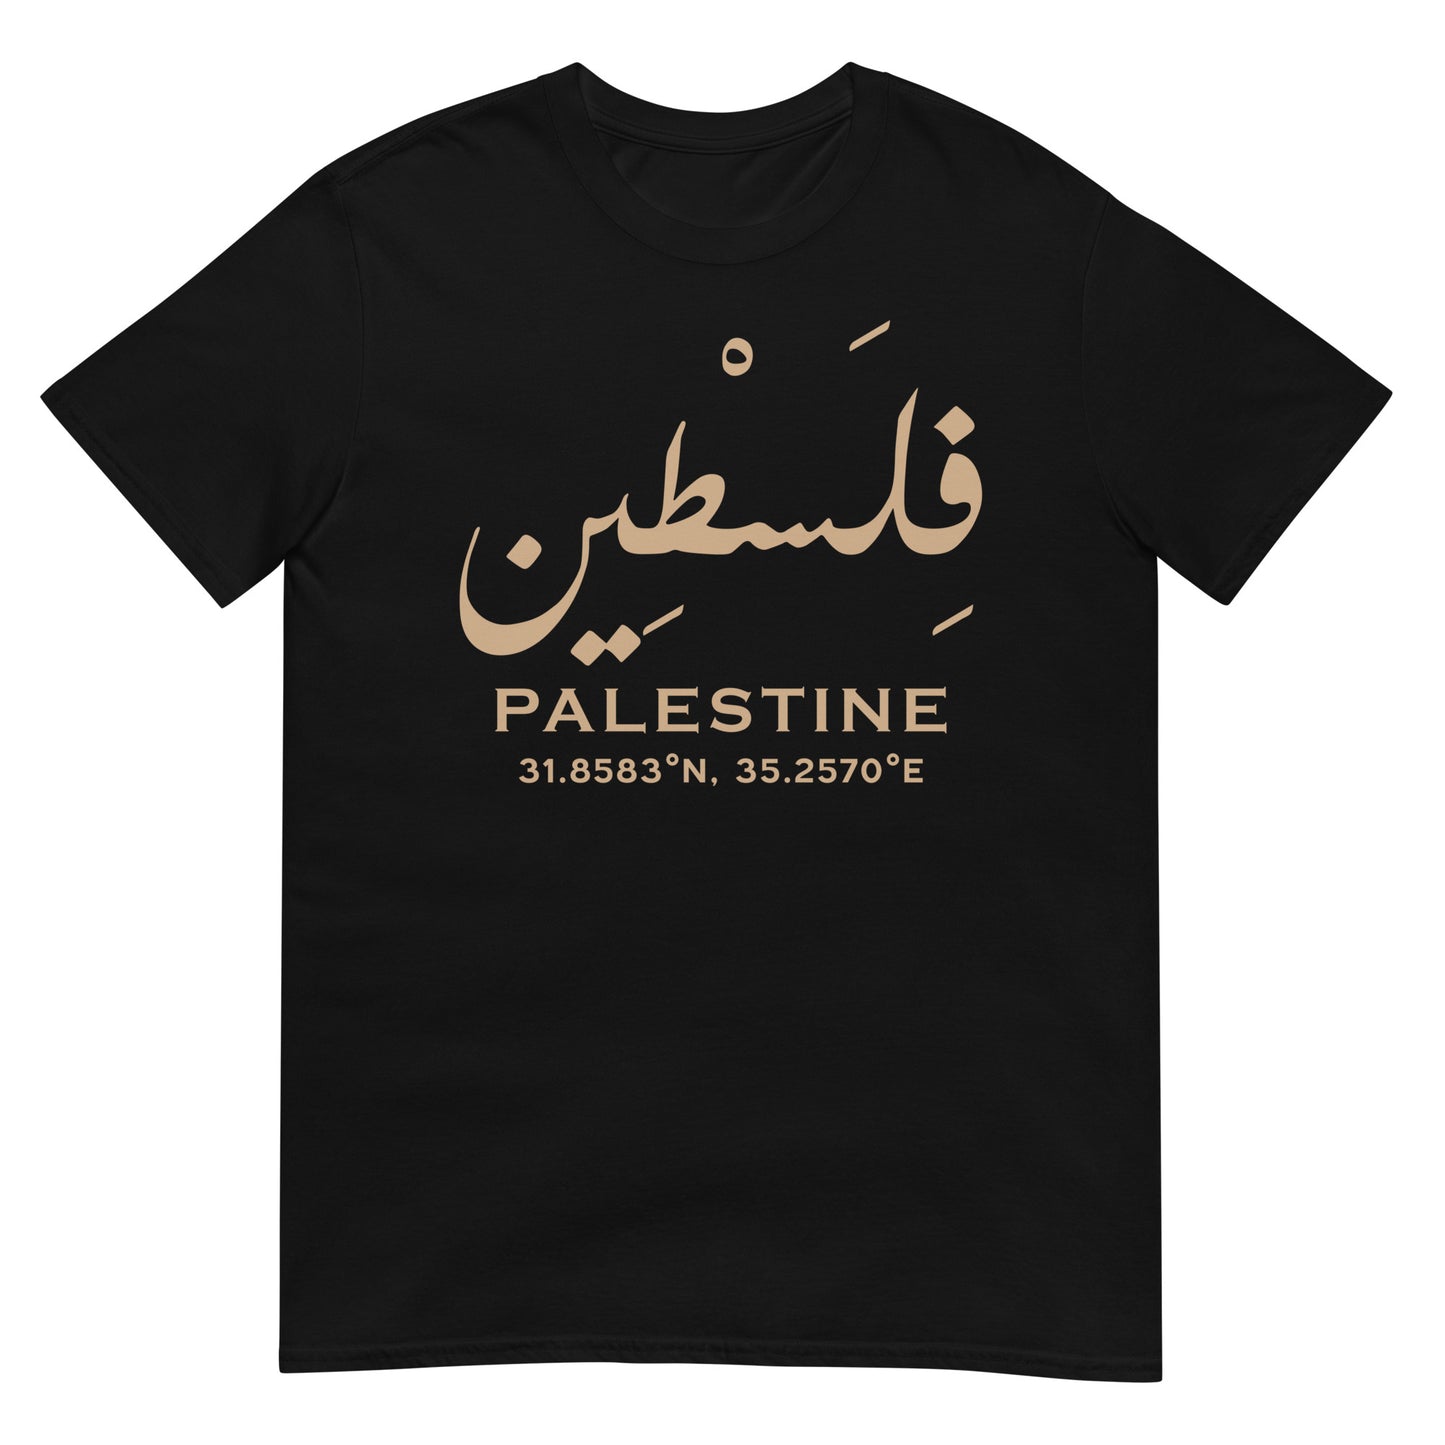 Palestine - Écriture arabe et localisation géographique T-shirt unisexe